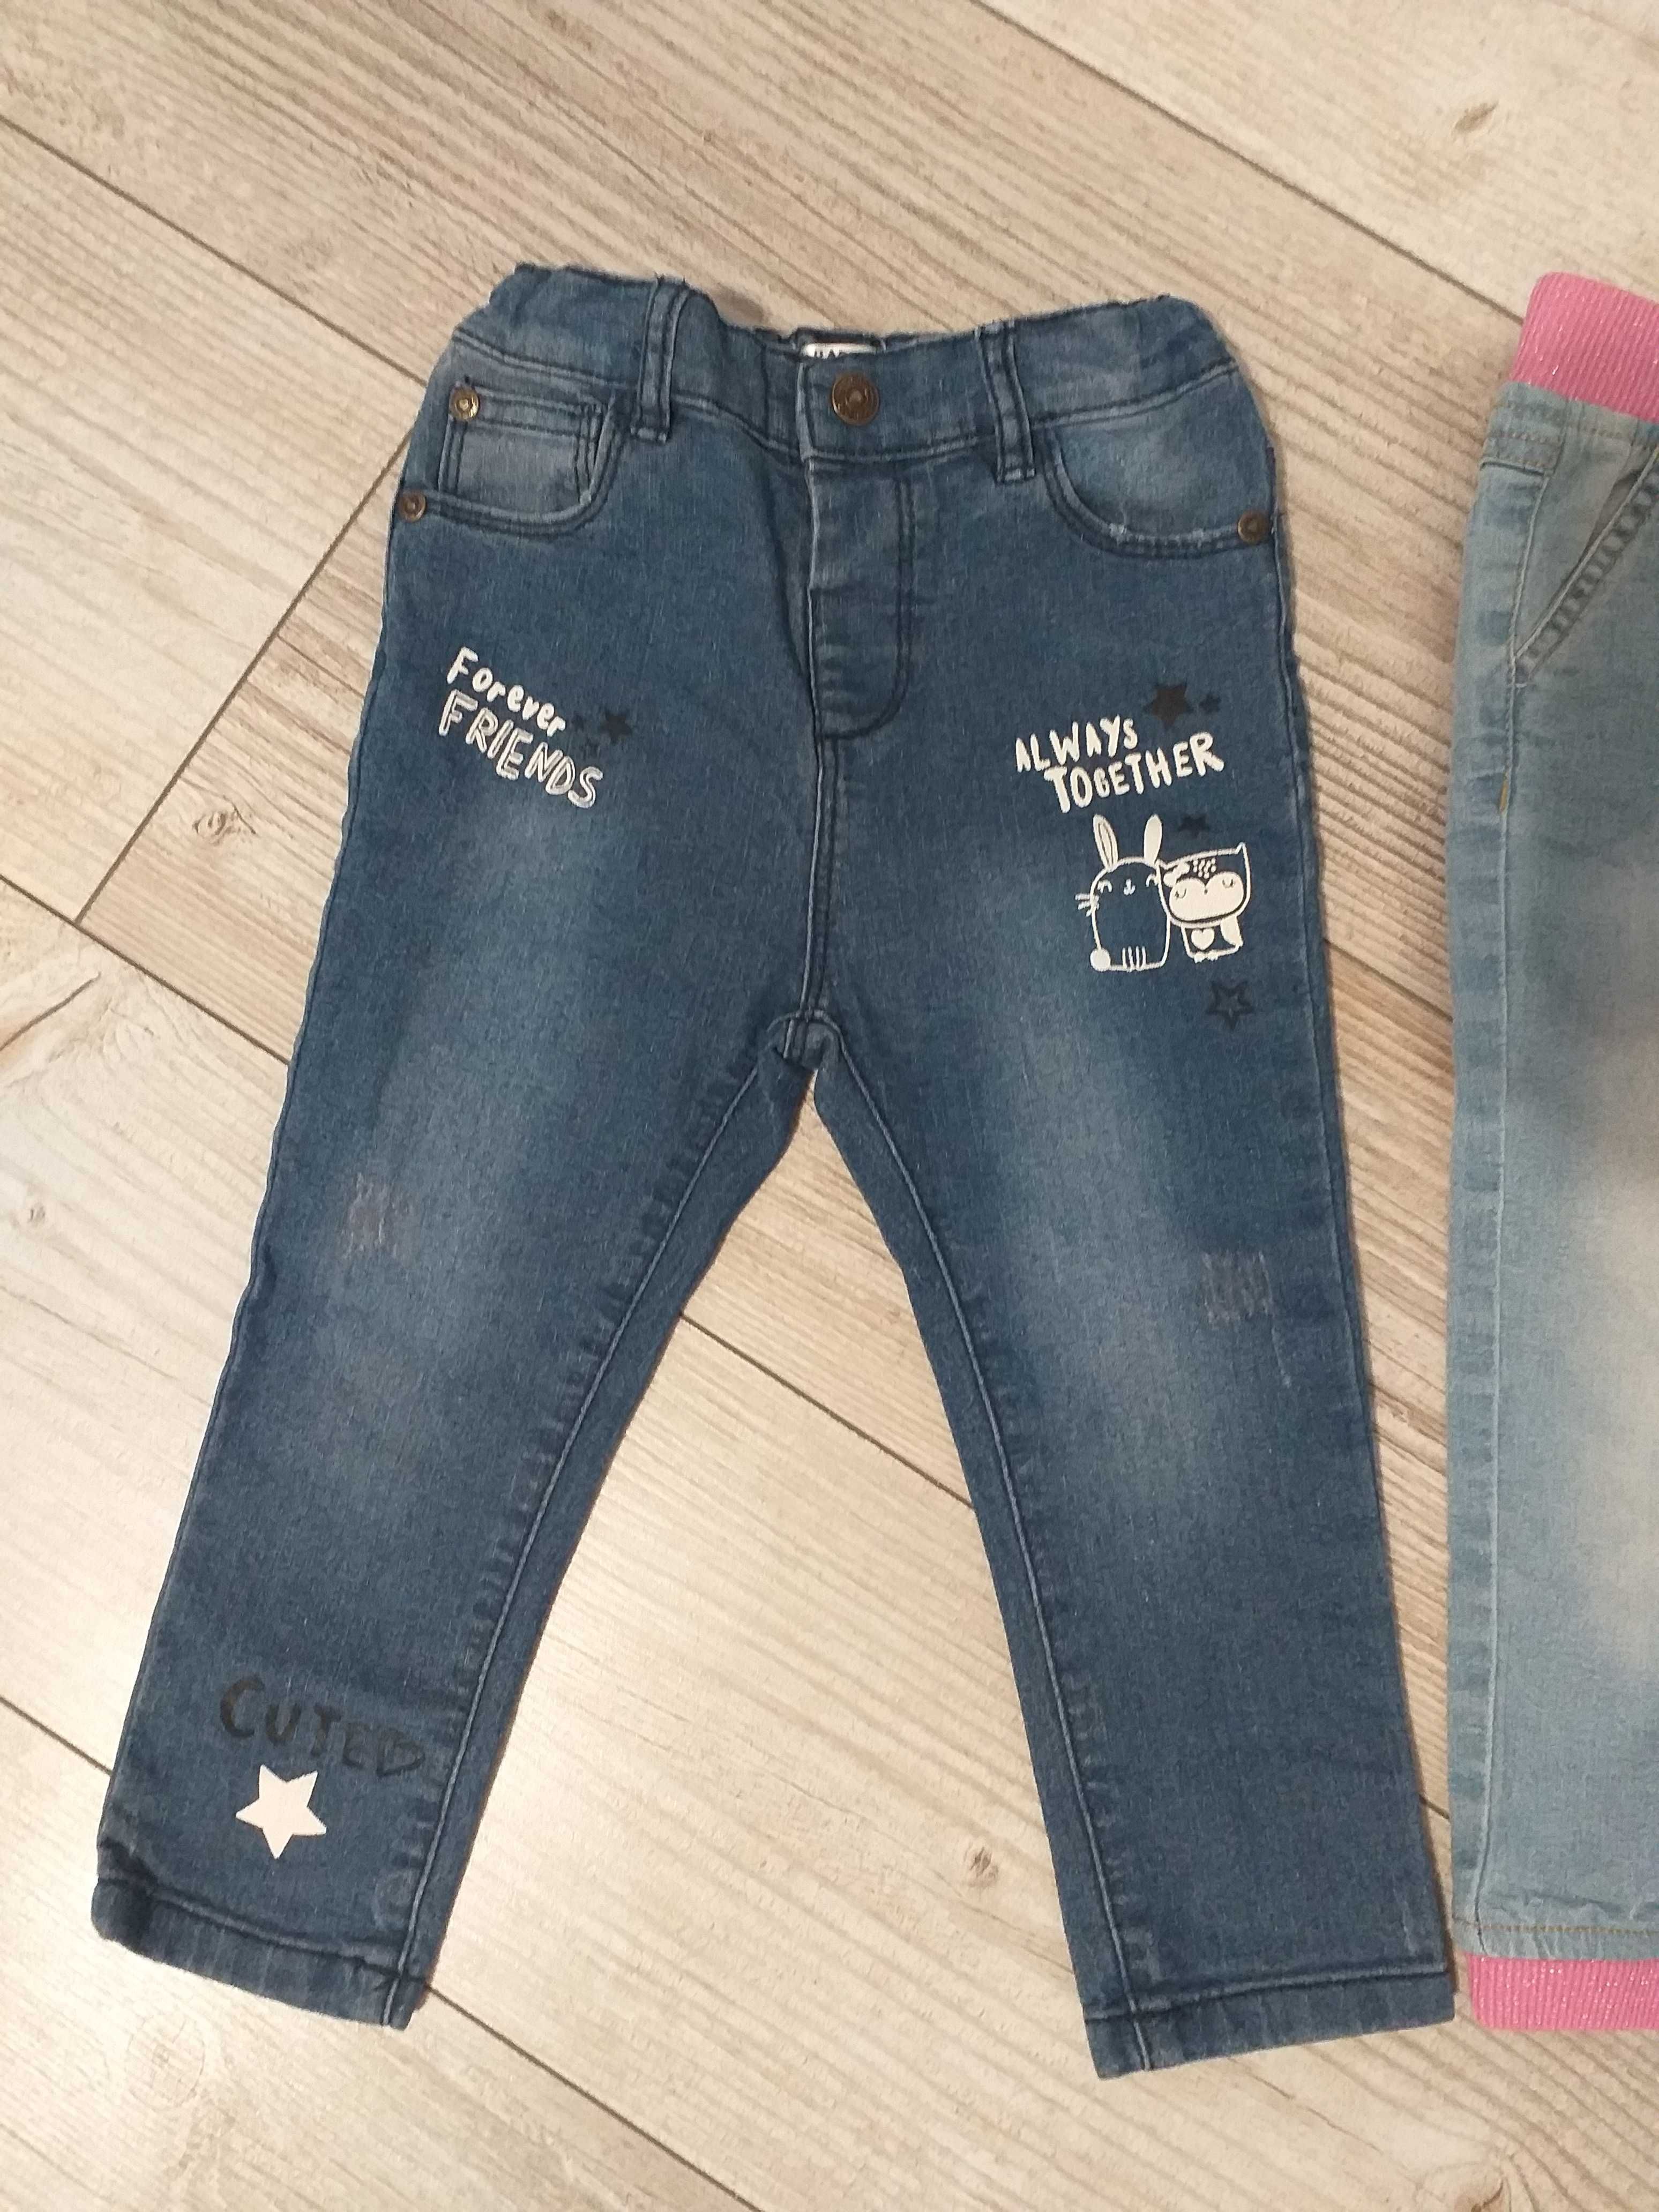 Spodnie jeansowe dla dziewczynki 92 cm, 2 pary